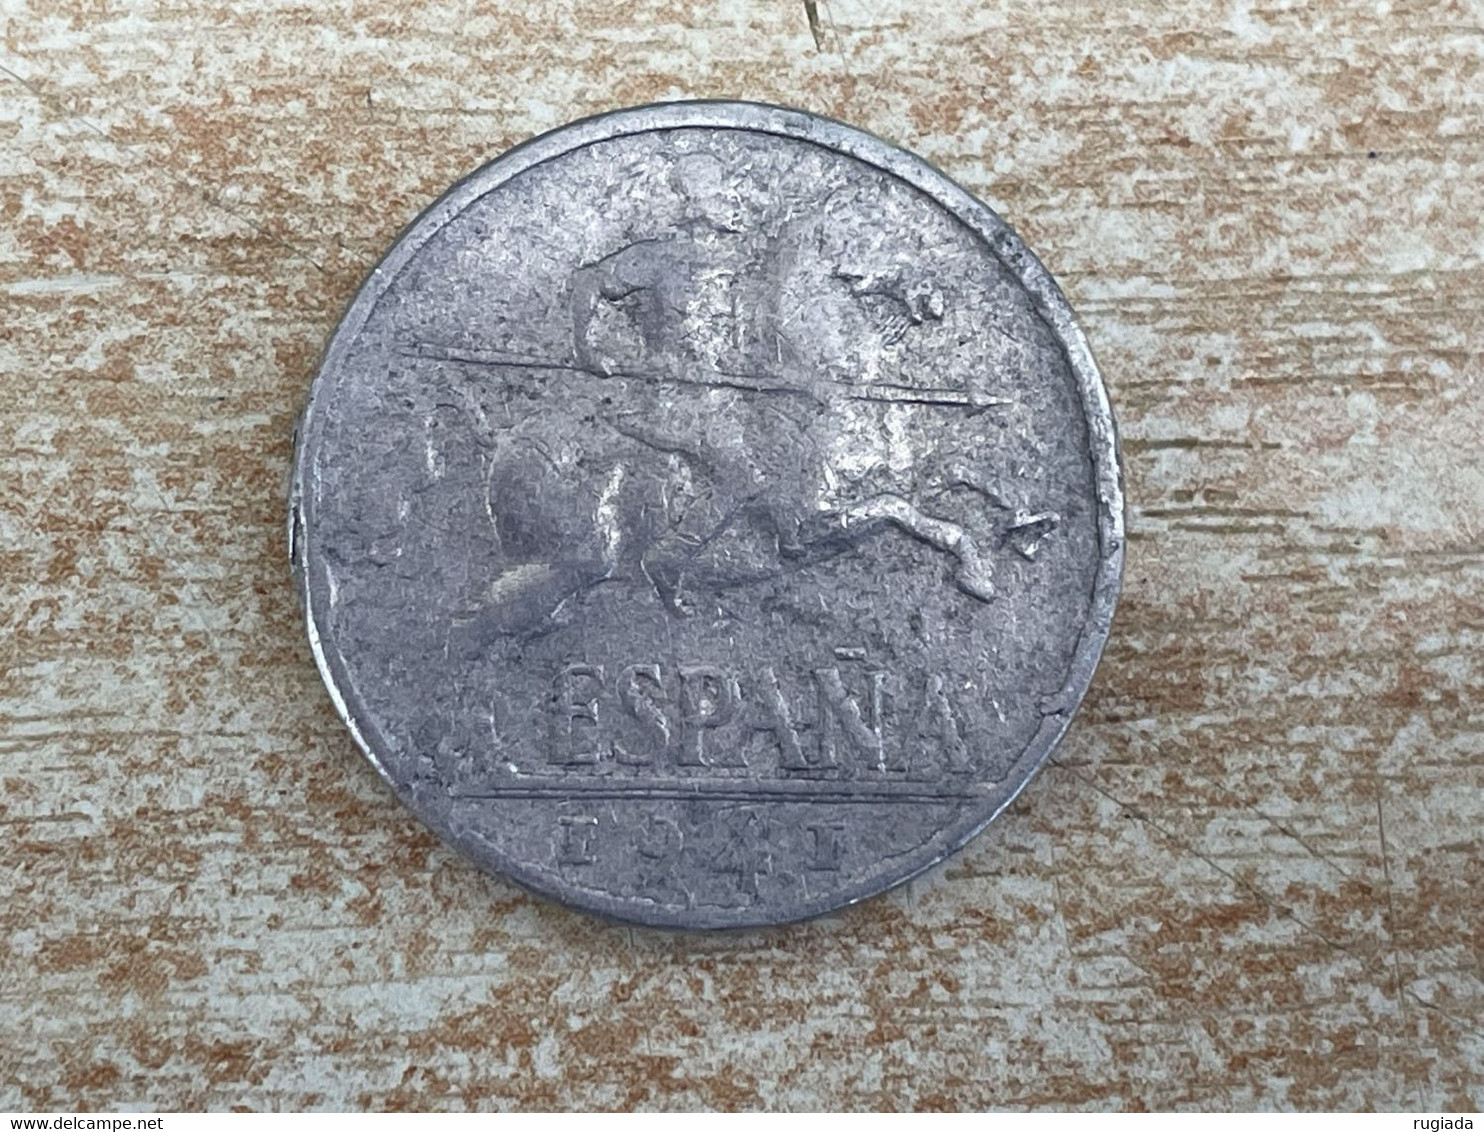 1941 Spain Espana Diez 10 Centimos Coin, Aluminium, Fine, 'PLUS' Scarce Date - 10 Centimos